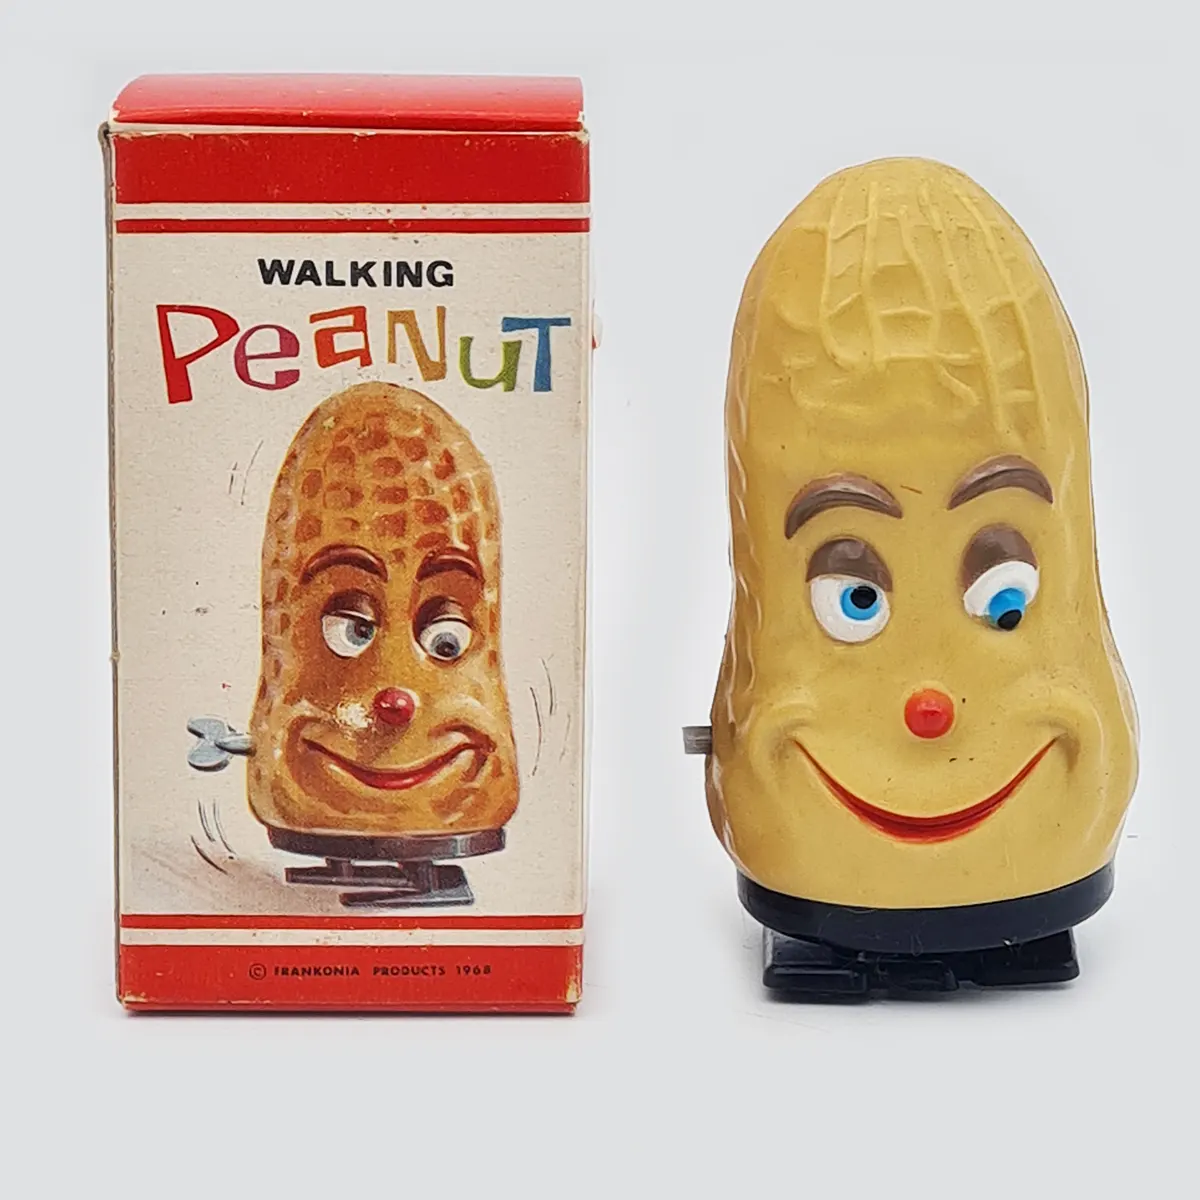 Walking peanut Frankonia Products 1968 1